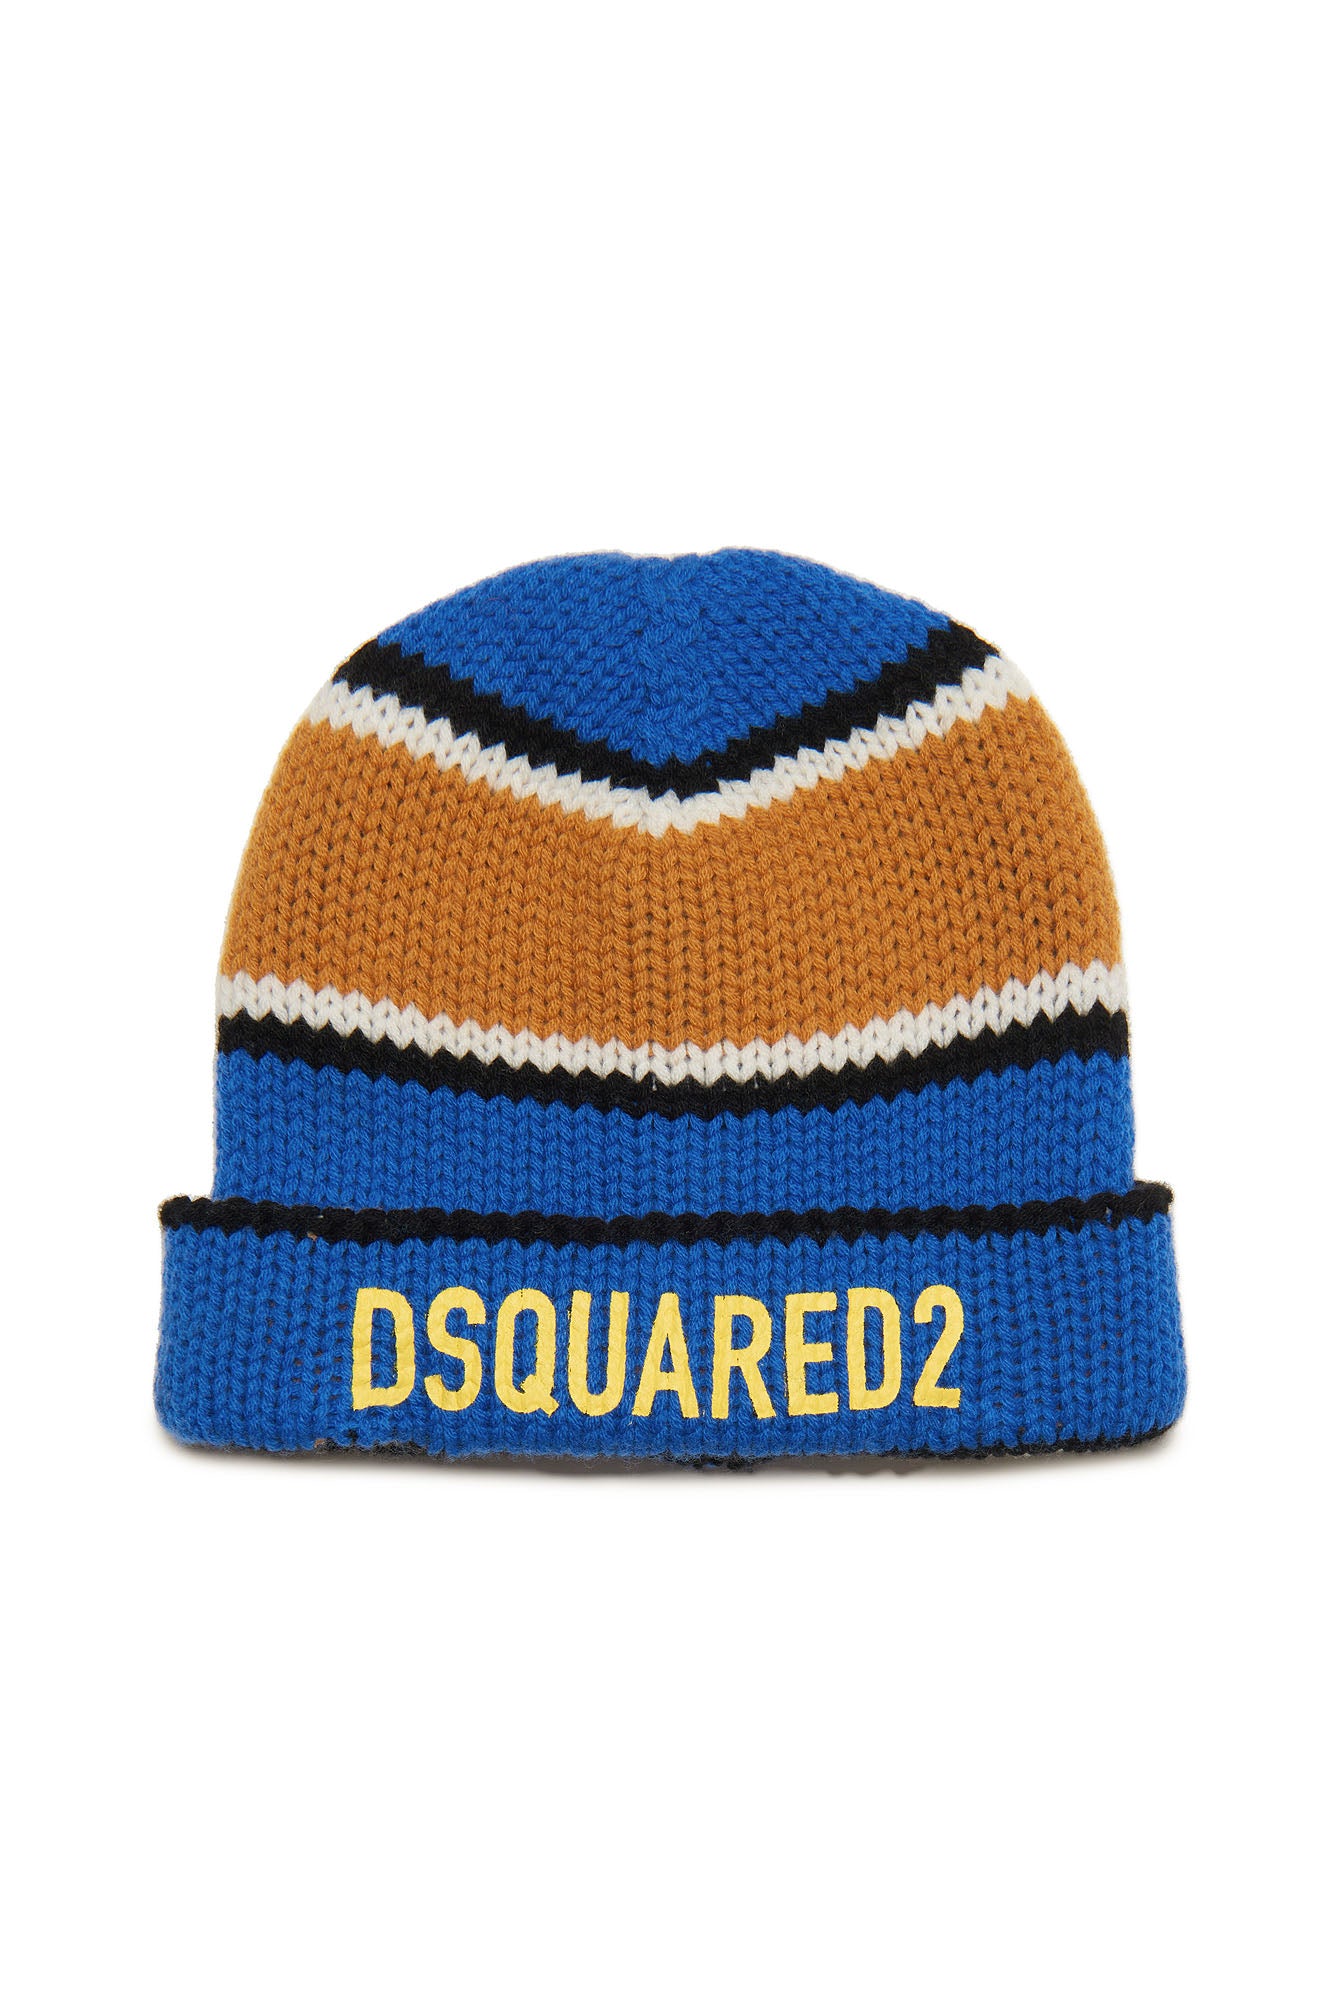 Dsquared2 Unisex Child Hat DQ2018 D0A6B Palace Blue